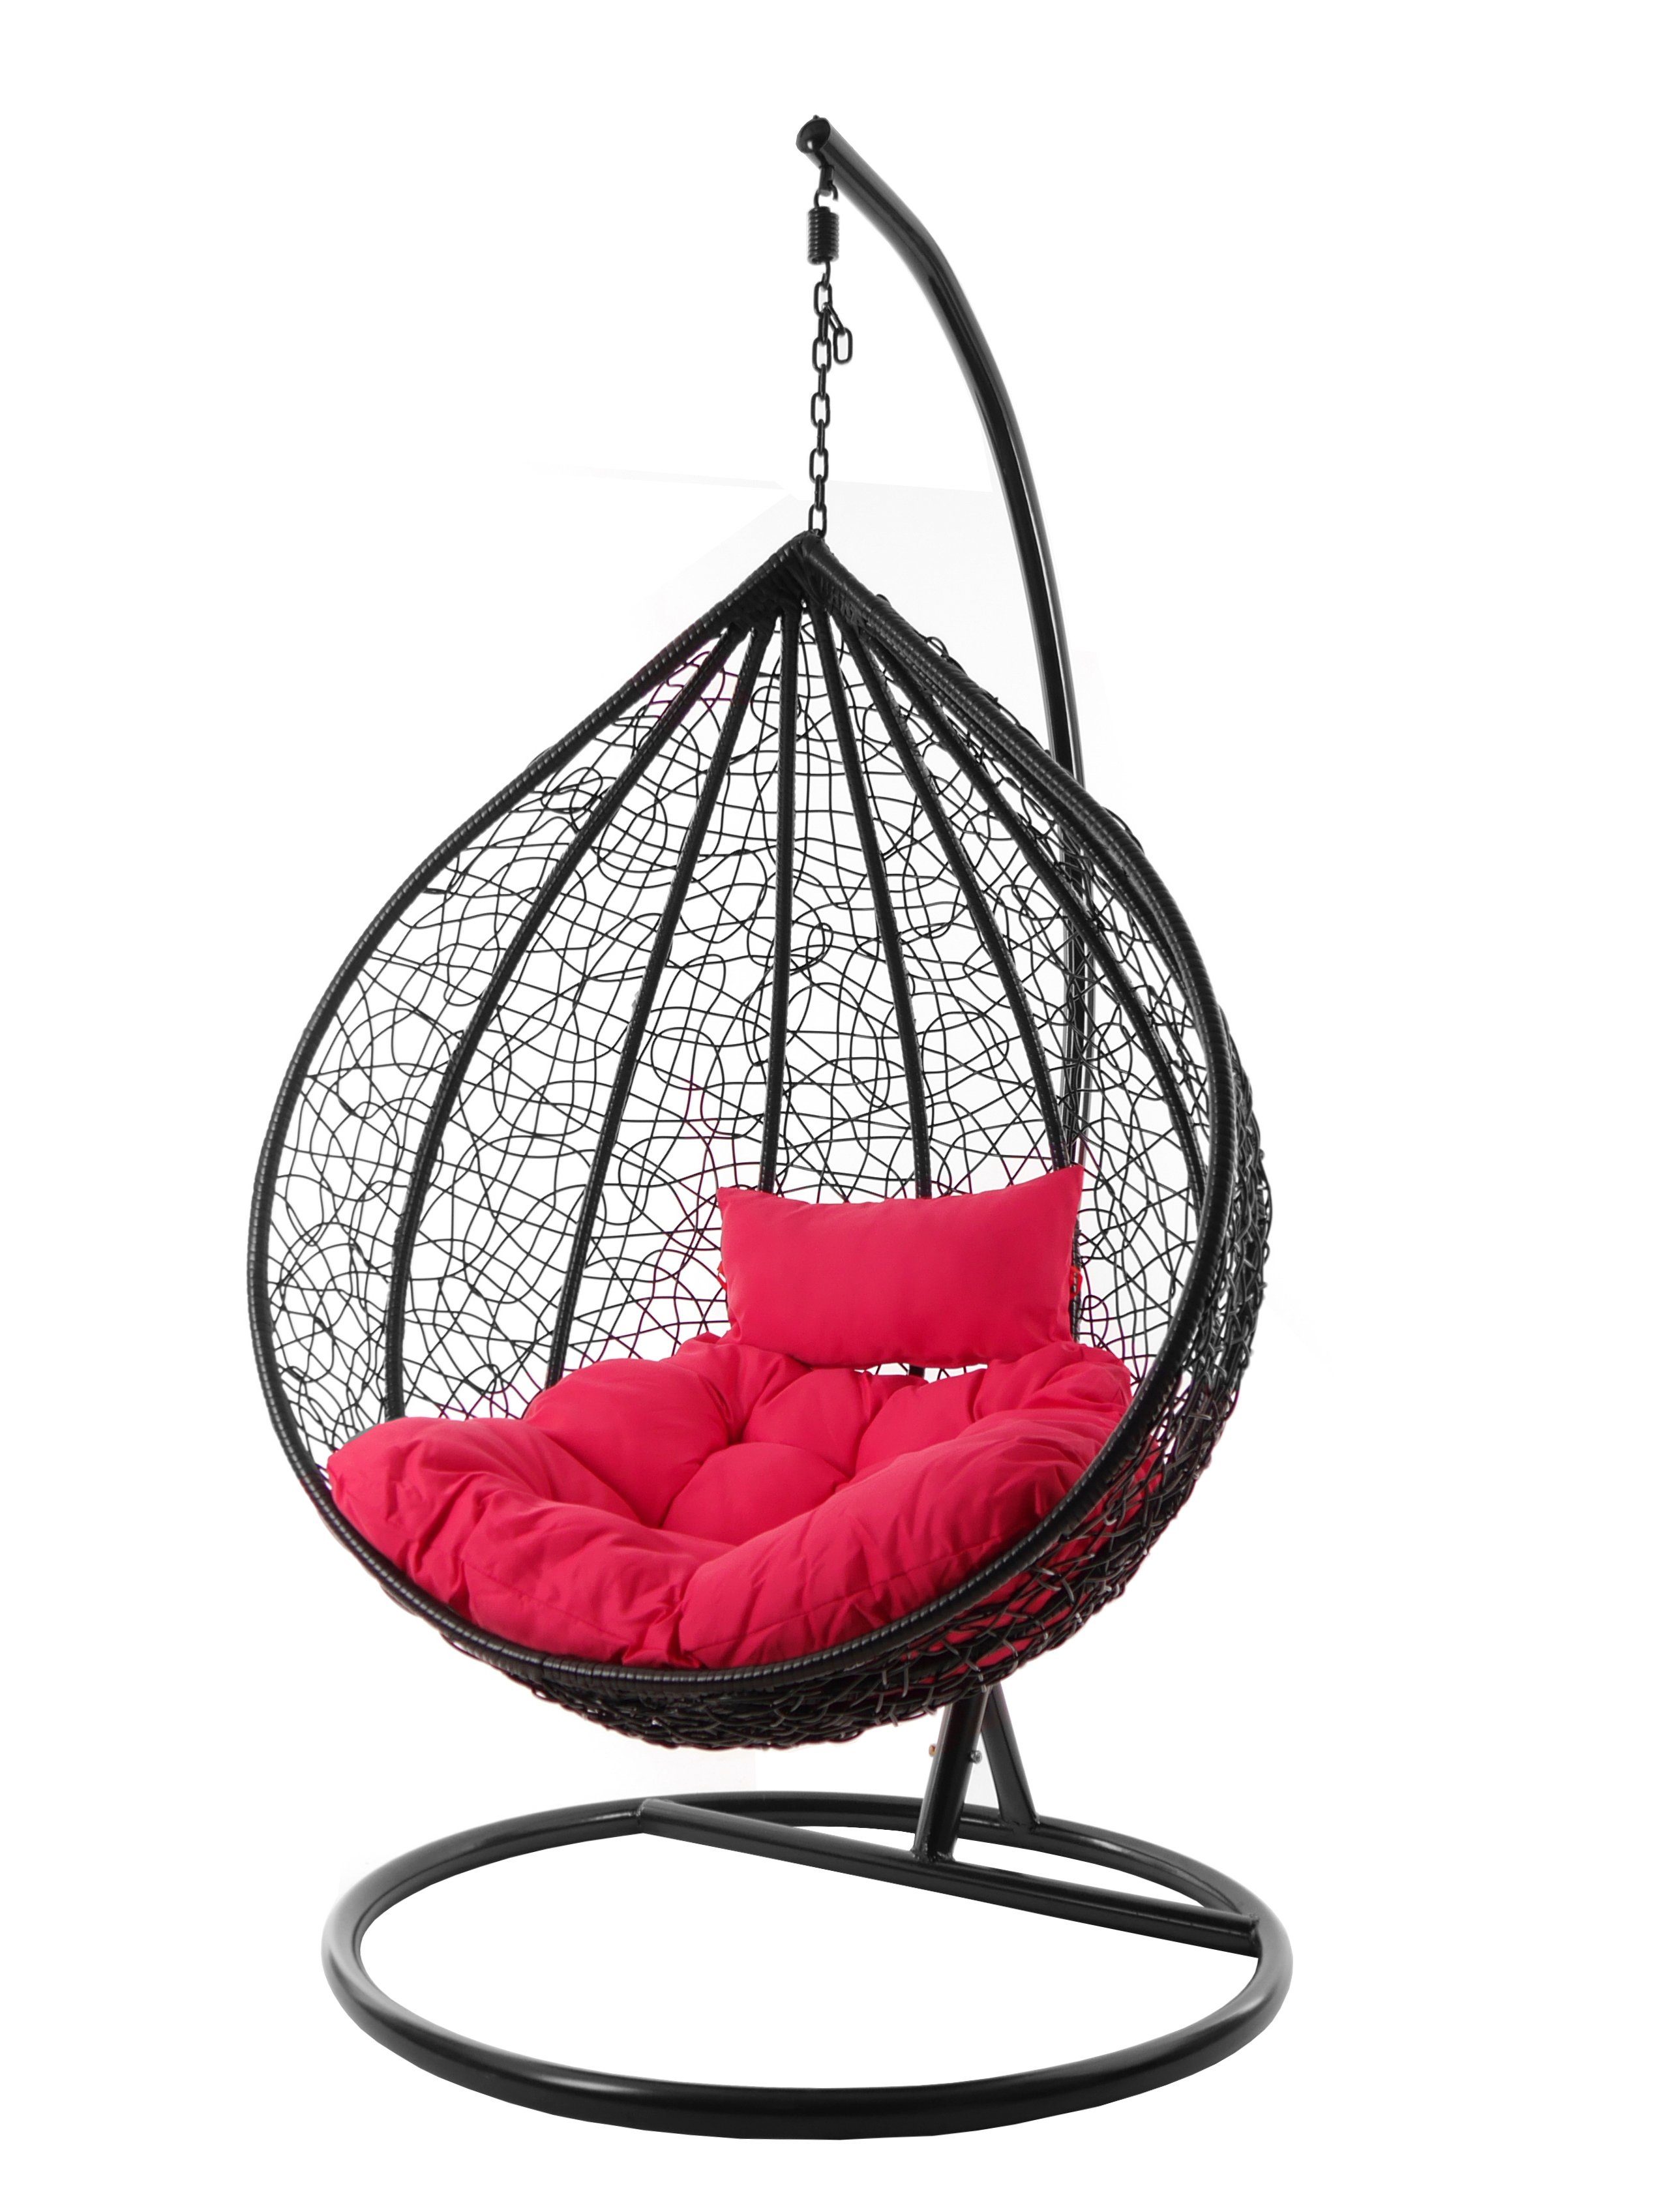 KIDEO Hängesessel Hängesessel MANACOR schwarz, edles schwarz, moderner Swing Chair, Schwebesessel inklusive Gestell und Kissen pink (3333 hot pink)